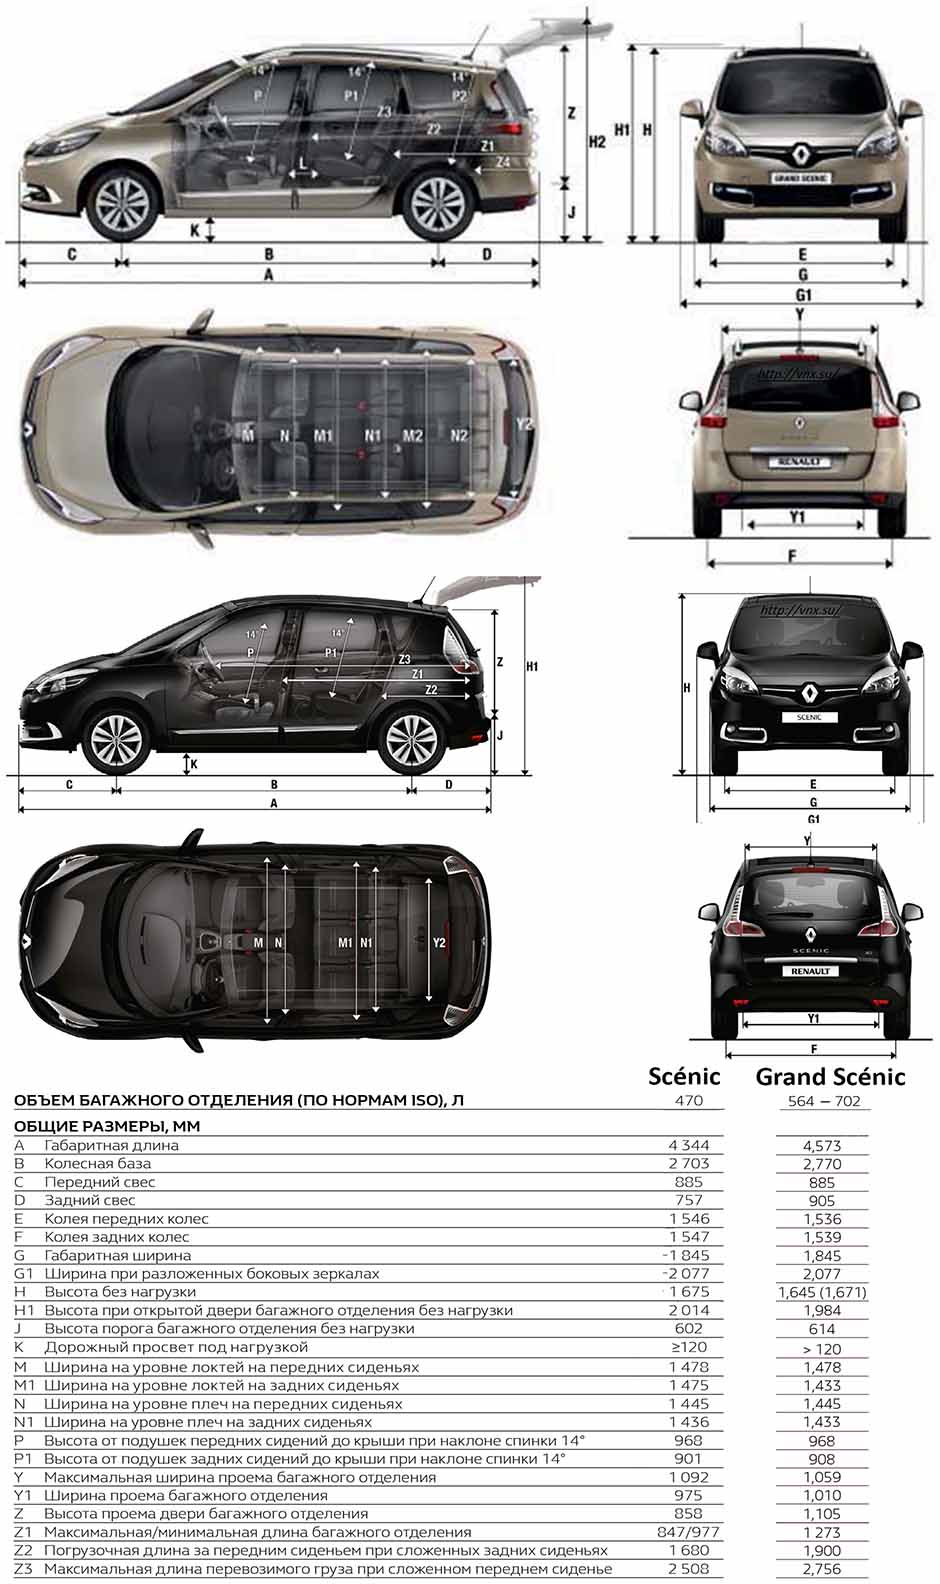 Габаритные размеры Рено Сценик 2014 (dimensions Renault Scenic Mark III)